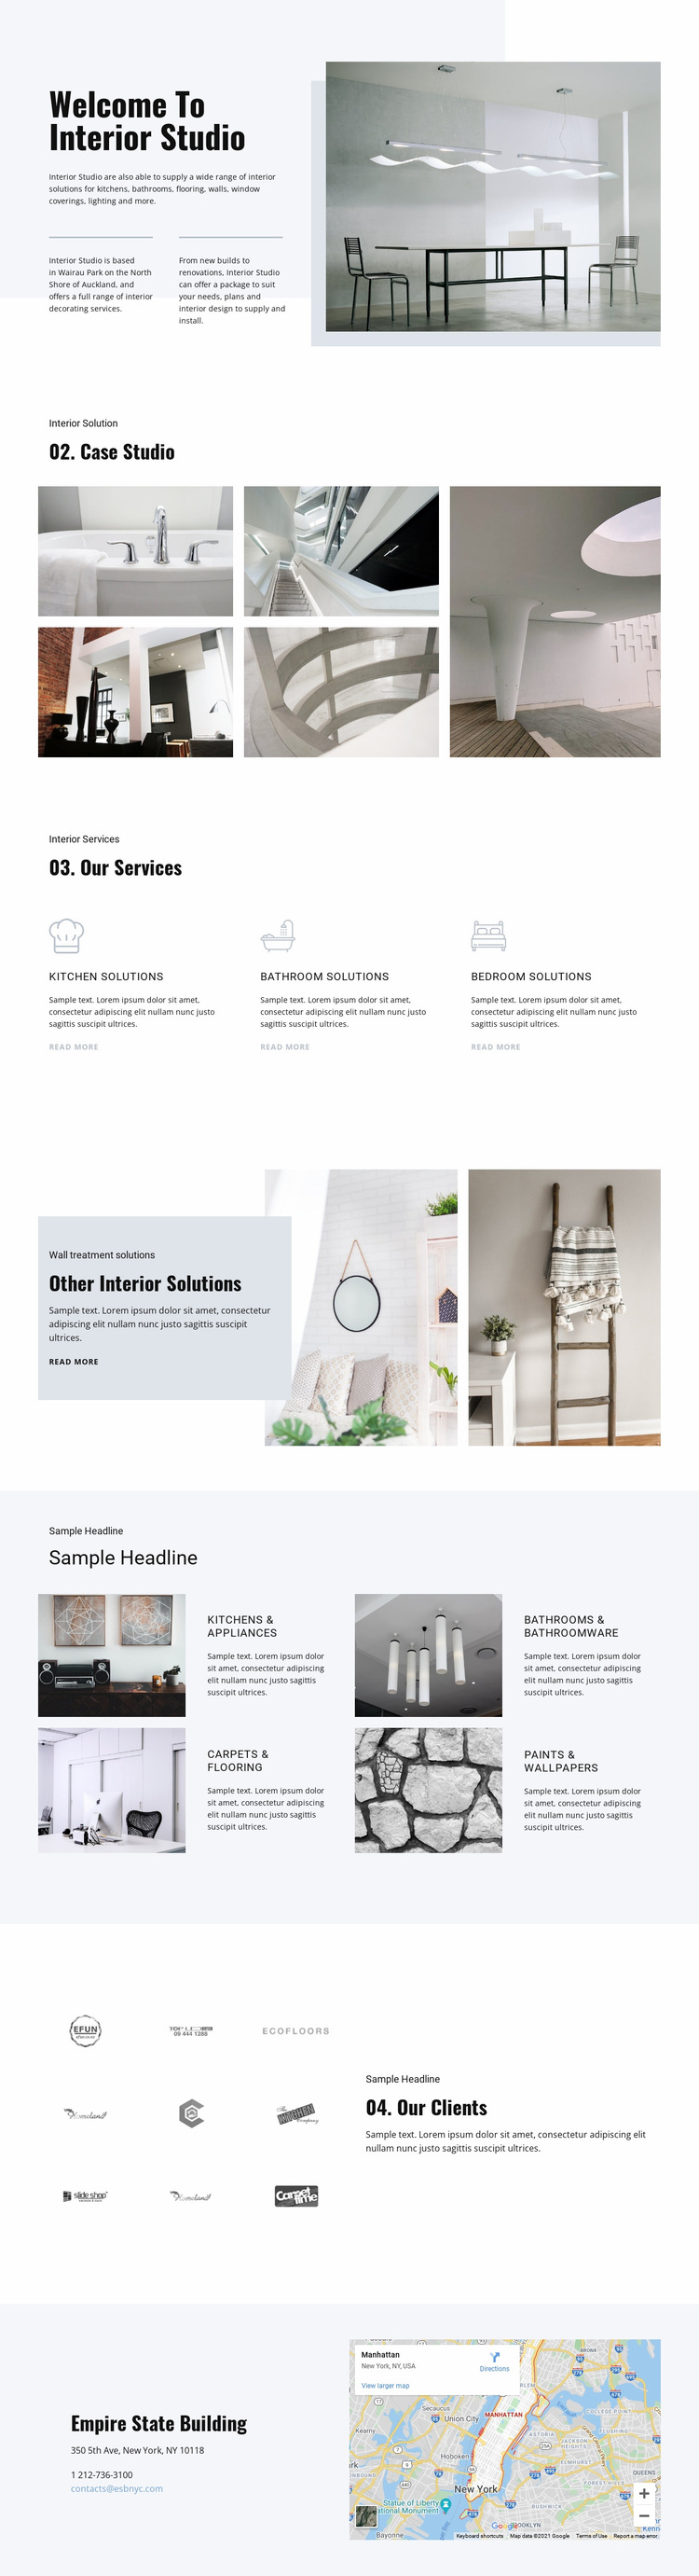 Welcome to interior studio Website Design